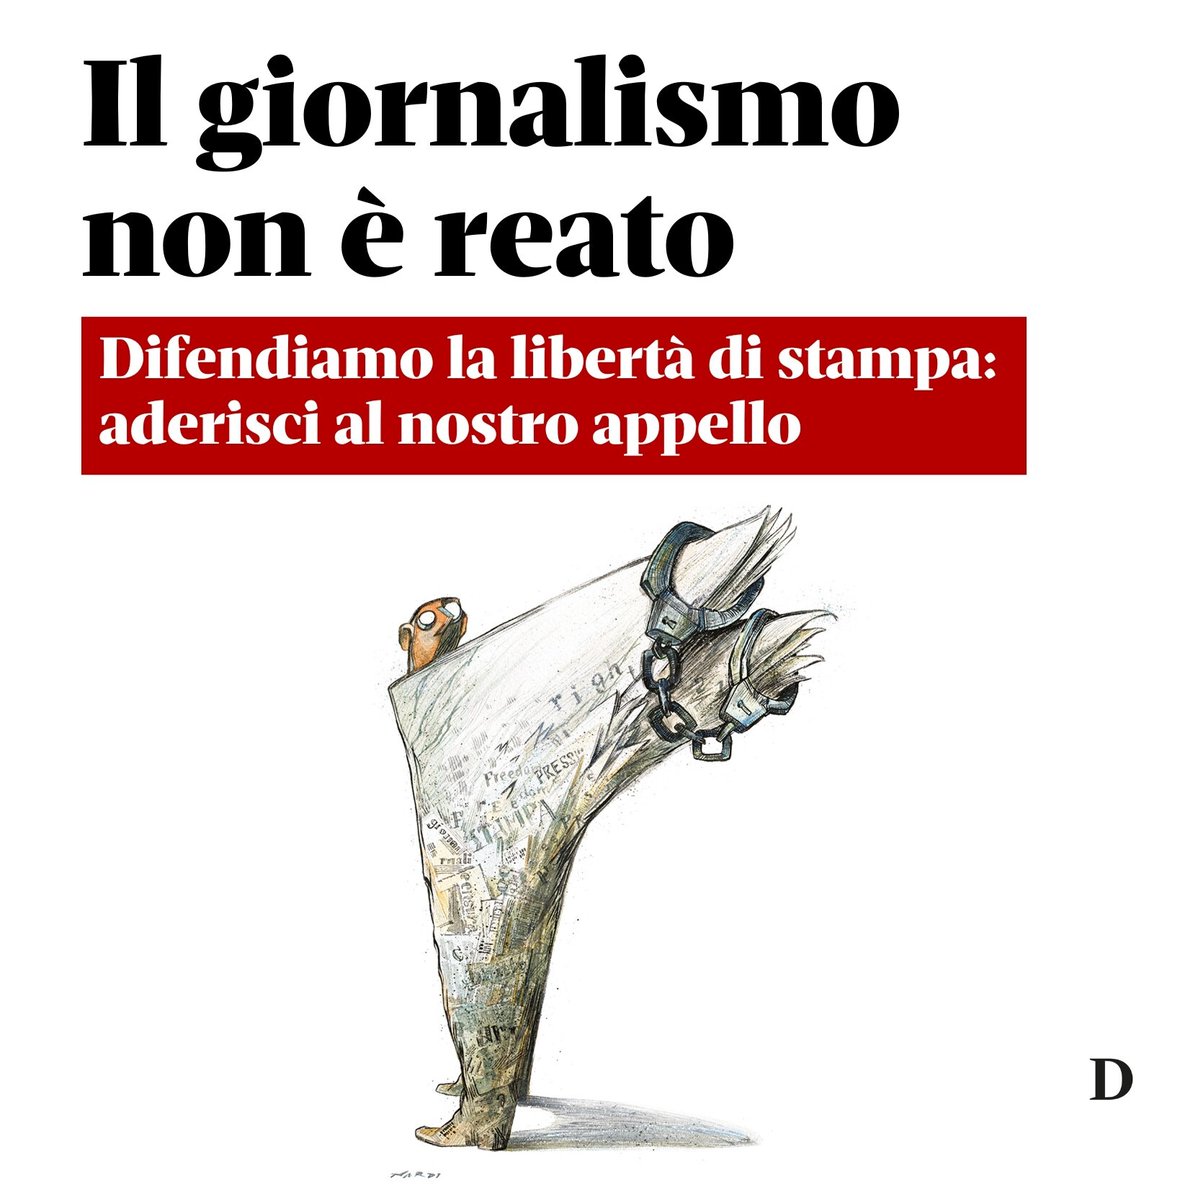 Tre giornalisti di Domani rischiano fino a 9 anni di carcere. L'Ue rafforza la protezione delle fonti, mentre in Italia il giornalismo d’inchiesta diventa reato. Condividi il nostro appello #MediaFreedom #DomaniFreeJournalism editorialedomani.it/politica/itali…